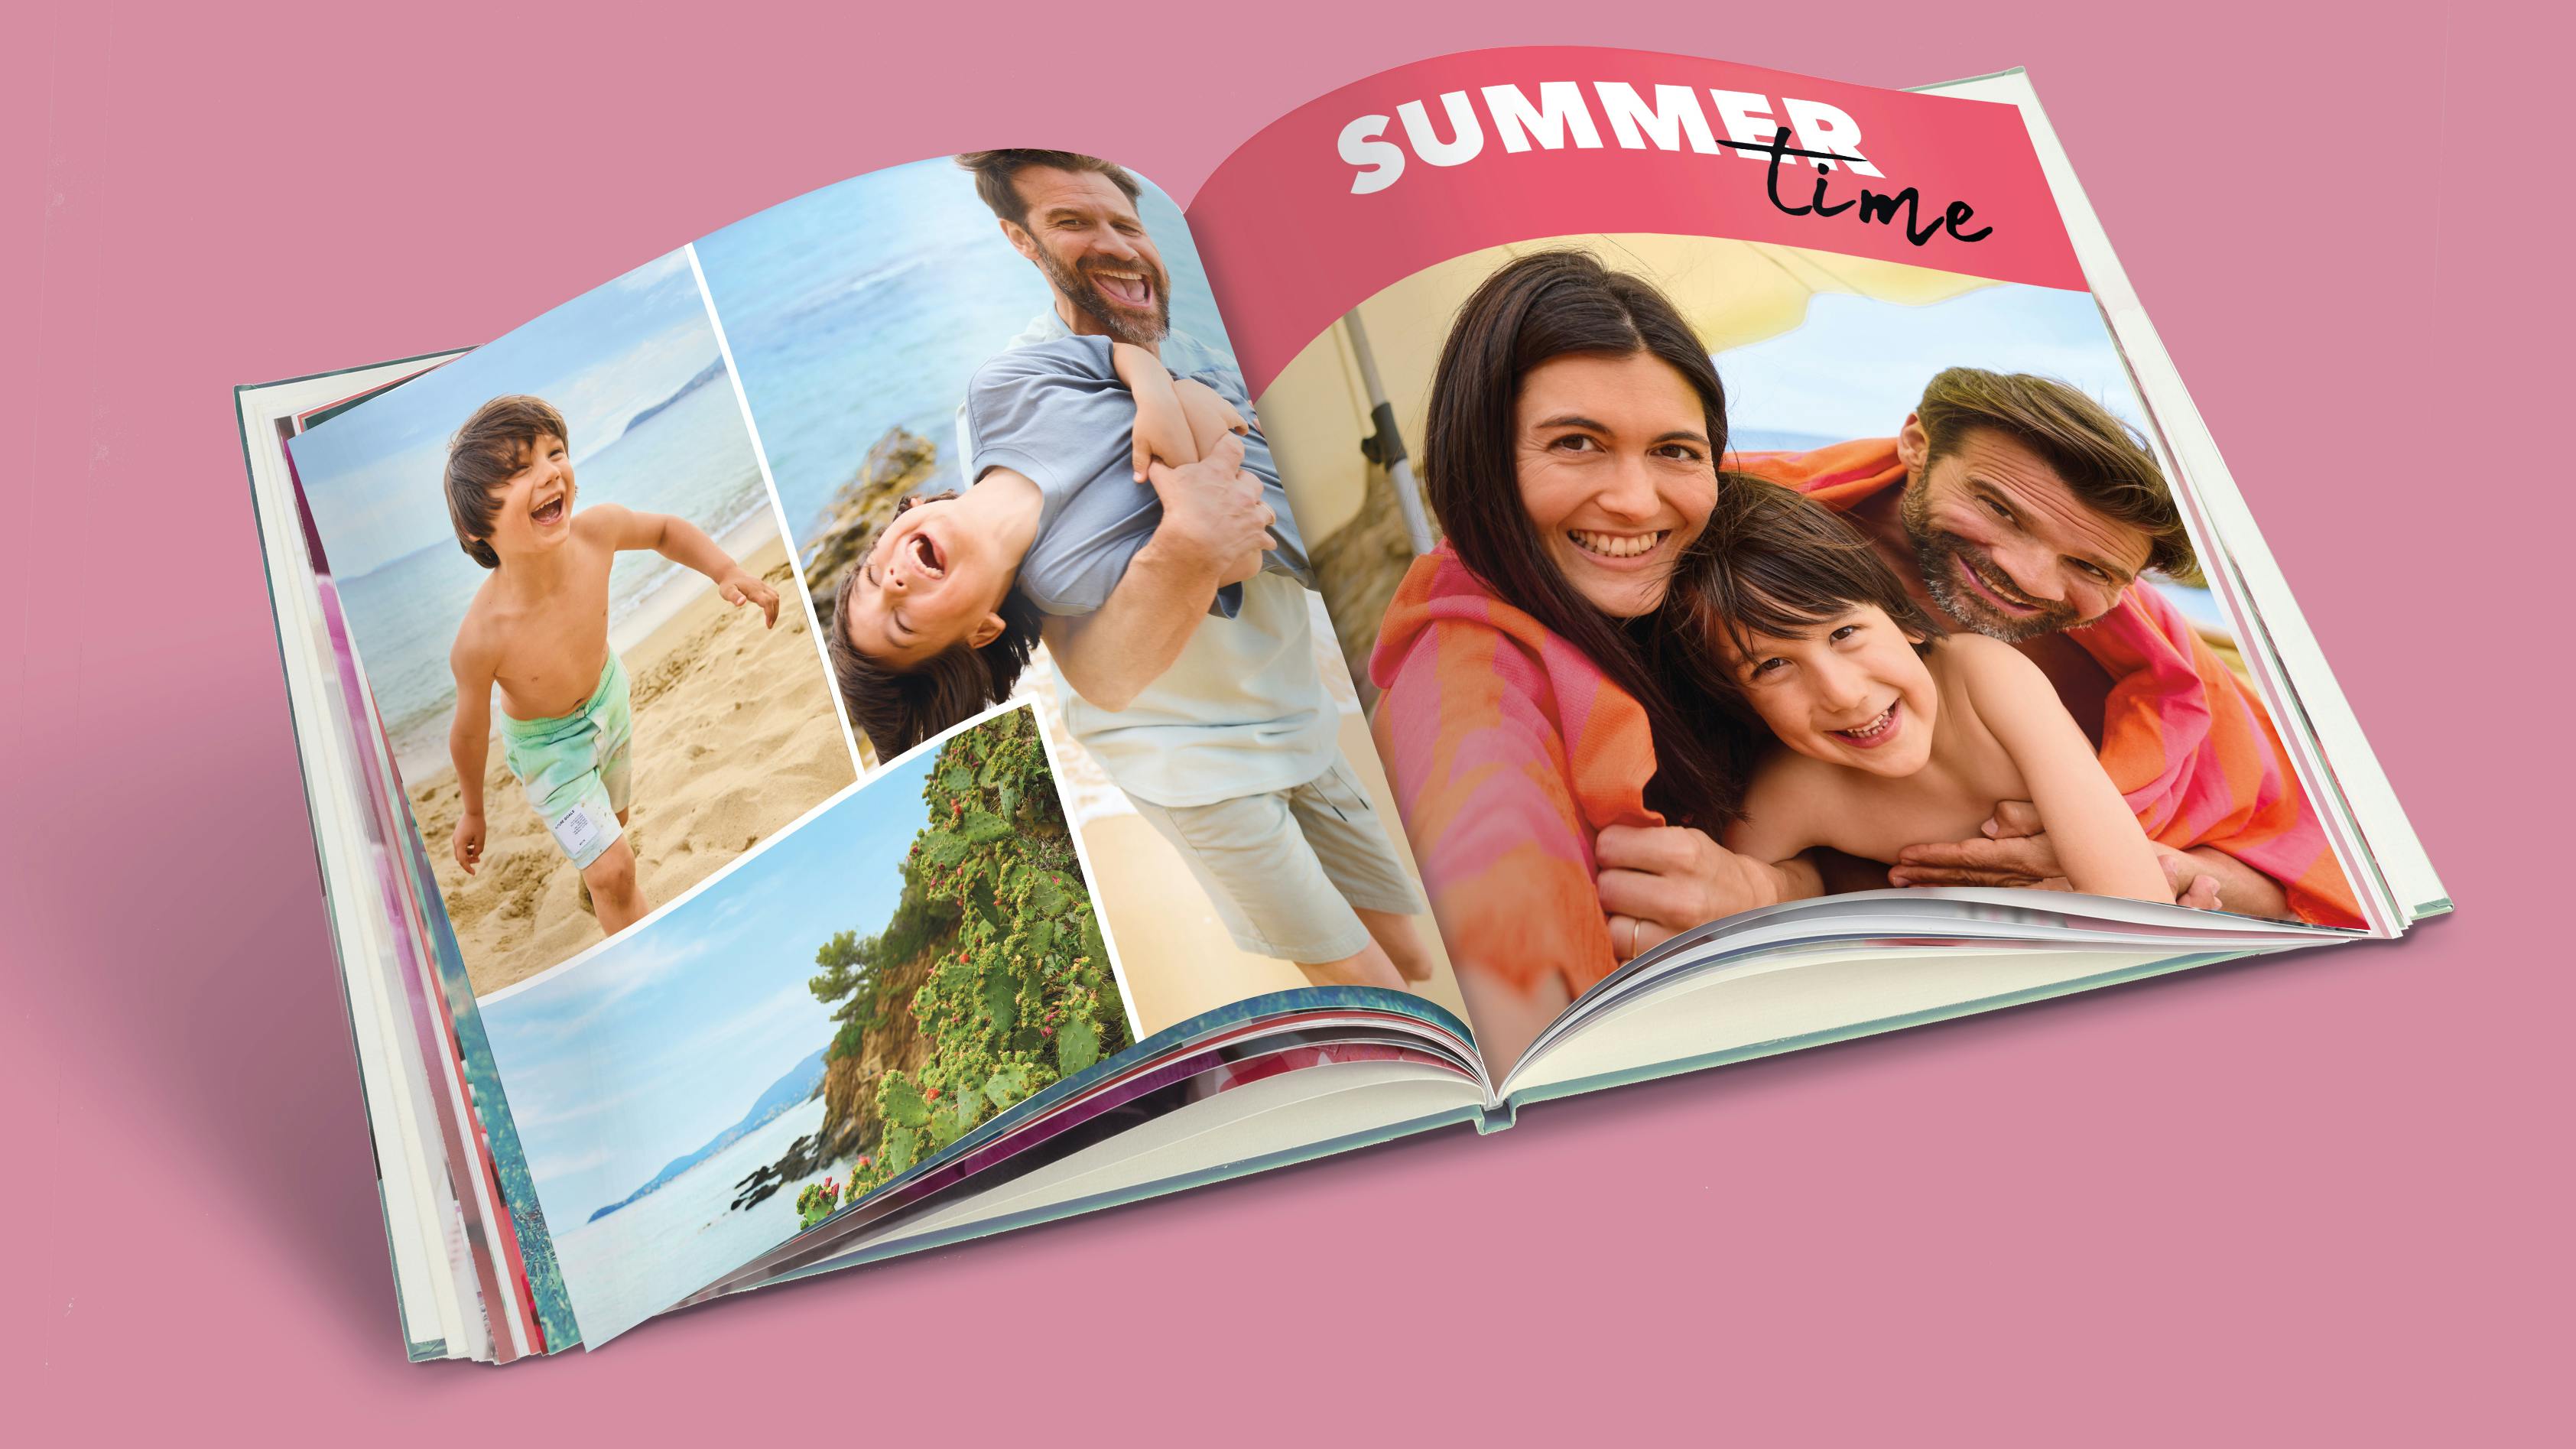 Pixum Fotoboek in vierkant formaat met zomerse vakantiefoto's